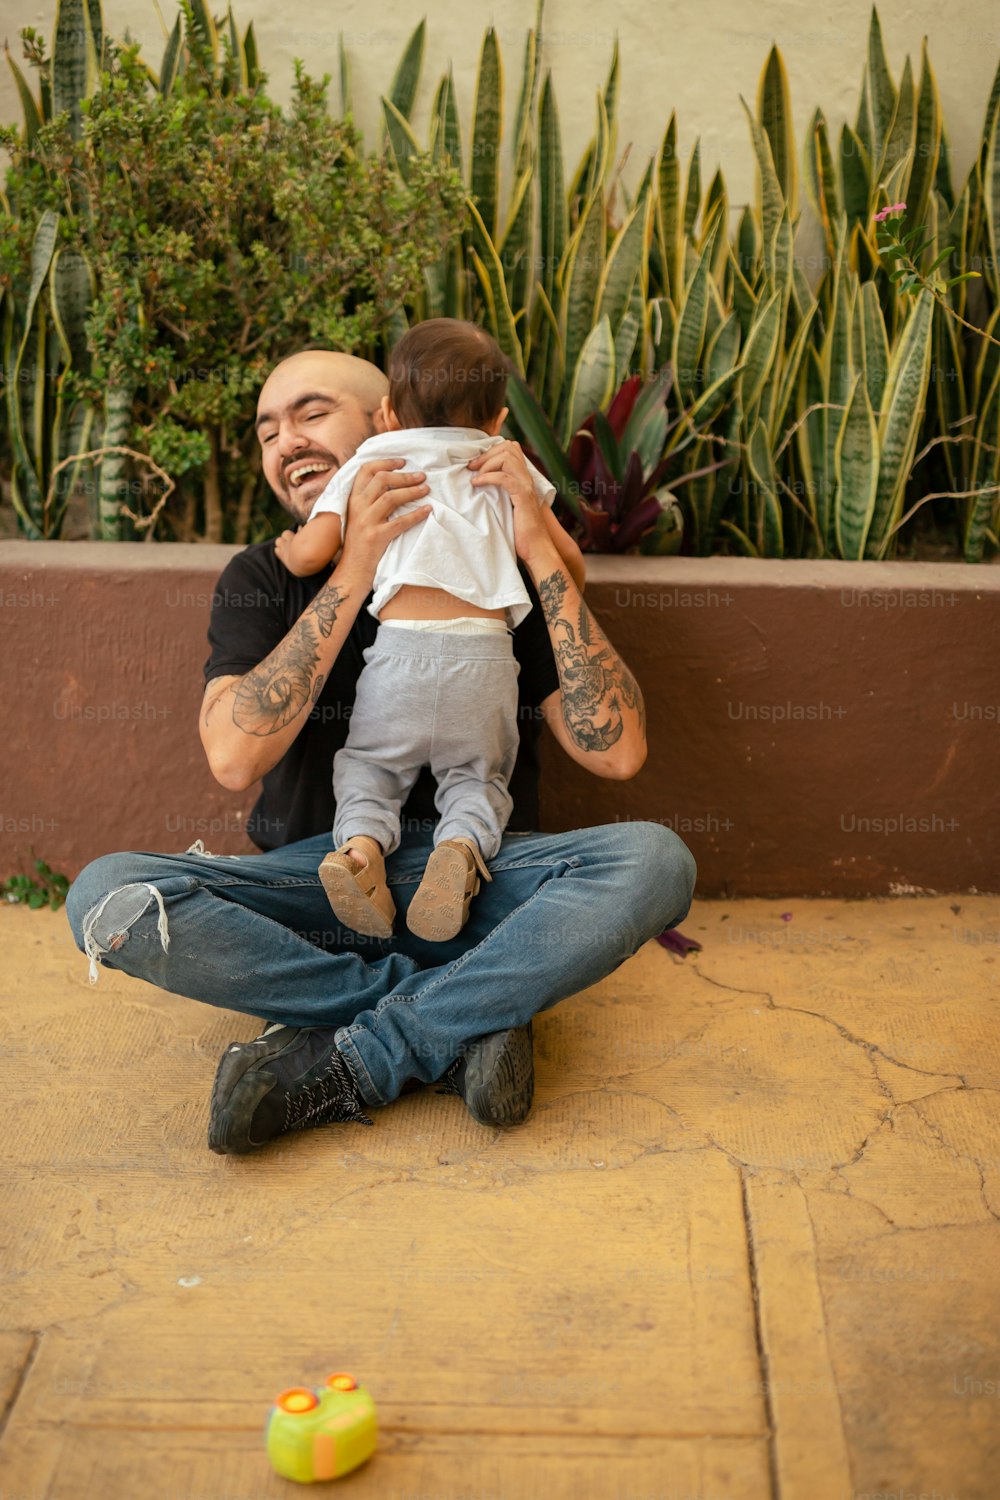 Un hombre sentado en el suelo sosteniendo a un bebé